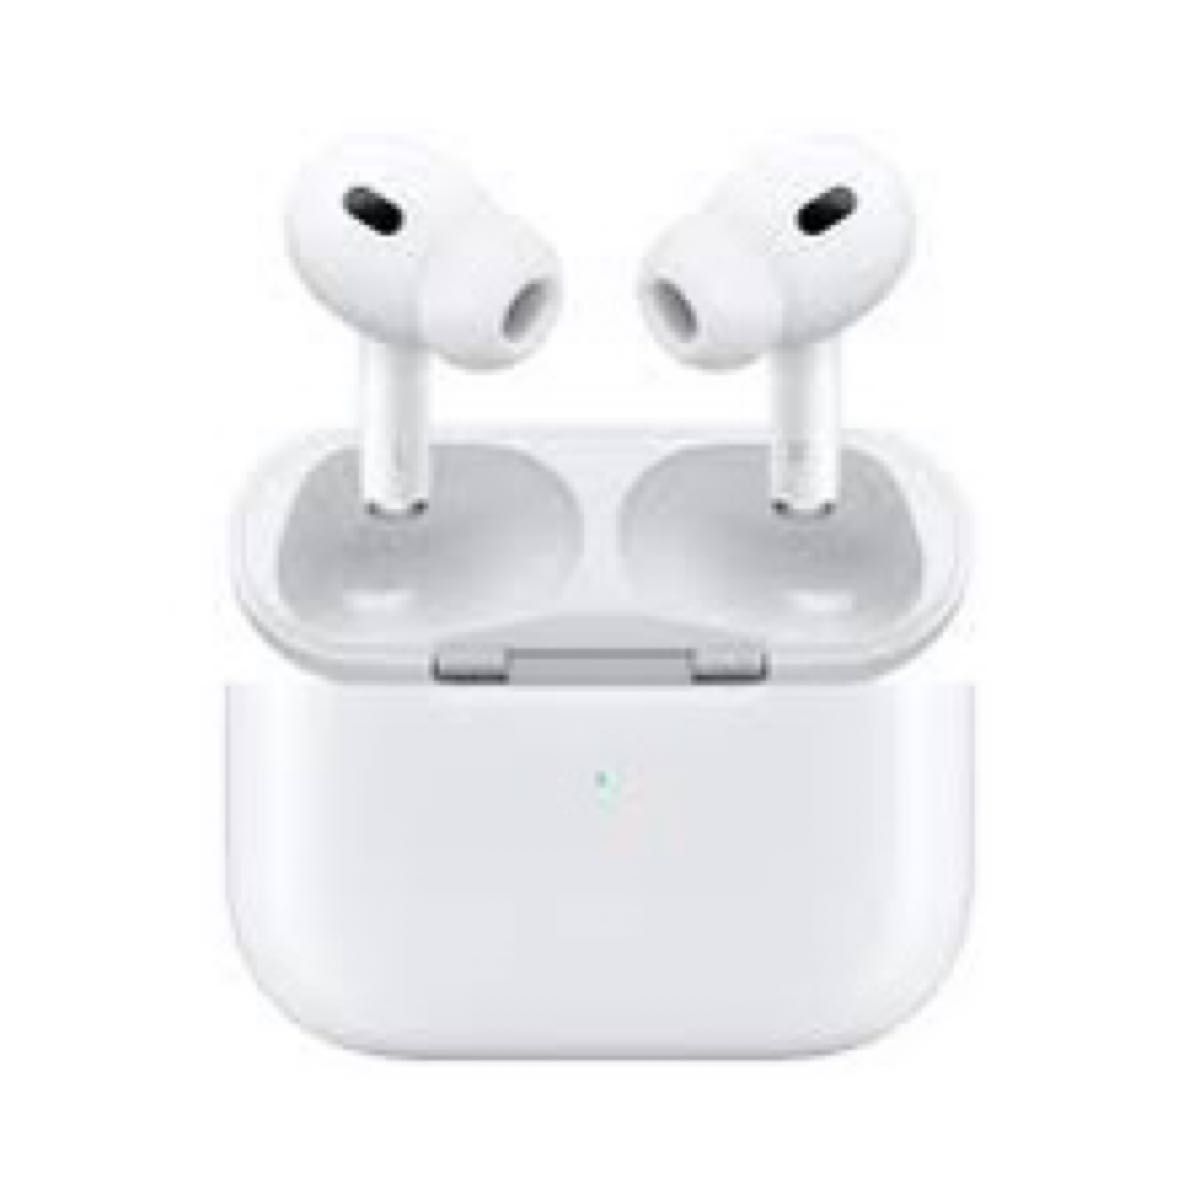 ヤマト工芸 新品 エアーポッズ プロ 左耳のみ L片耳 Apple AirPods Pro 